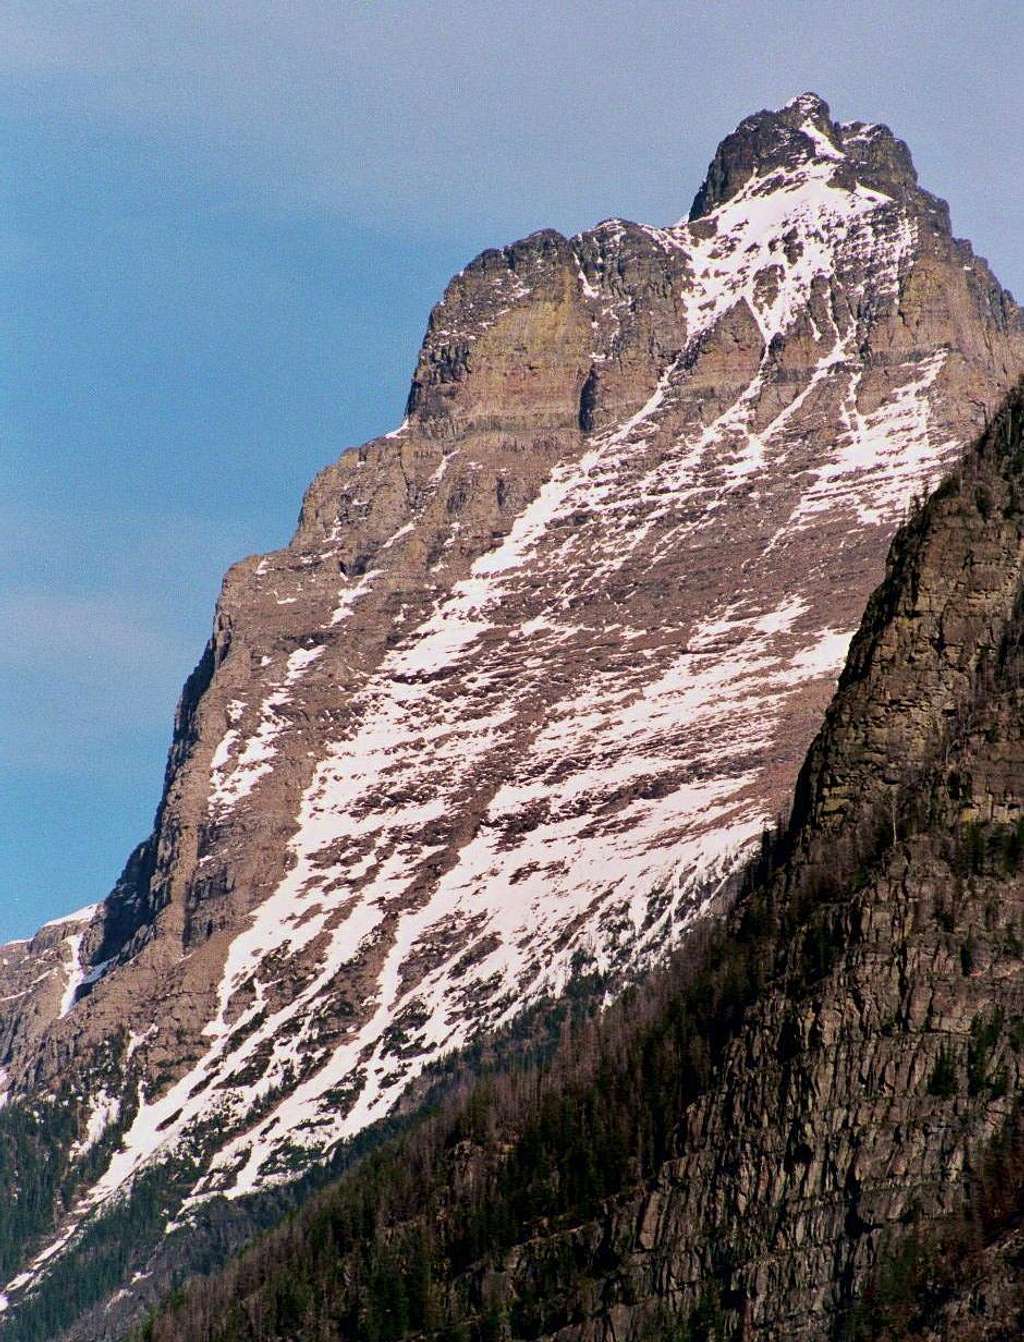 Kinnerly Peak